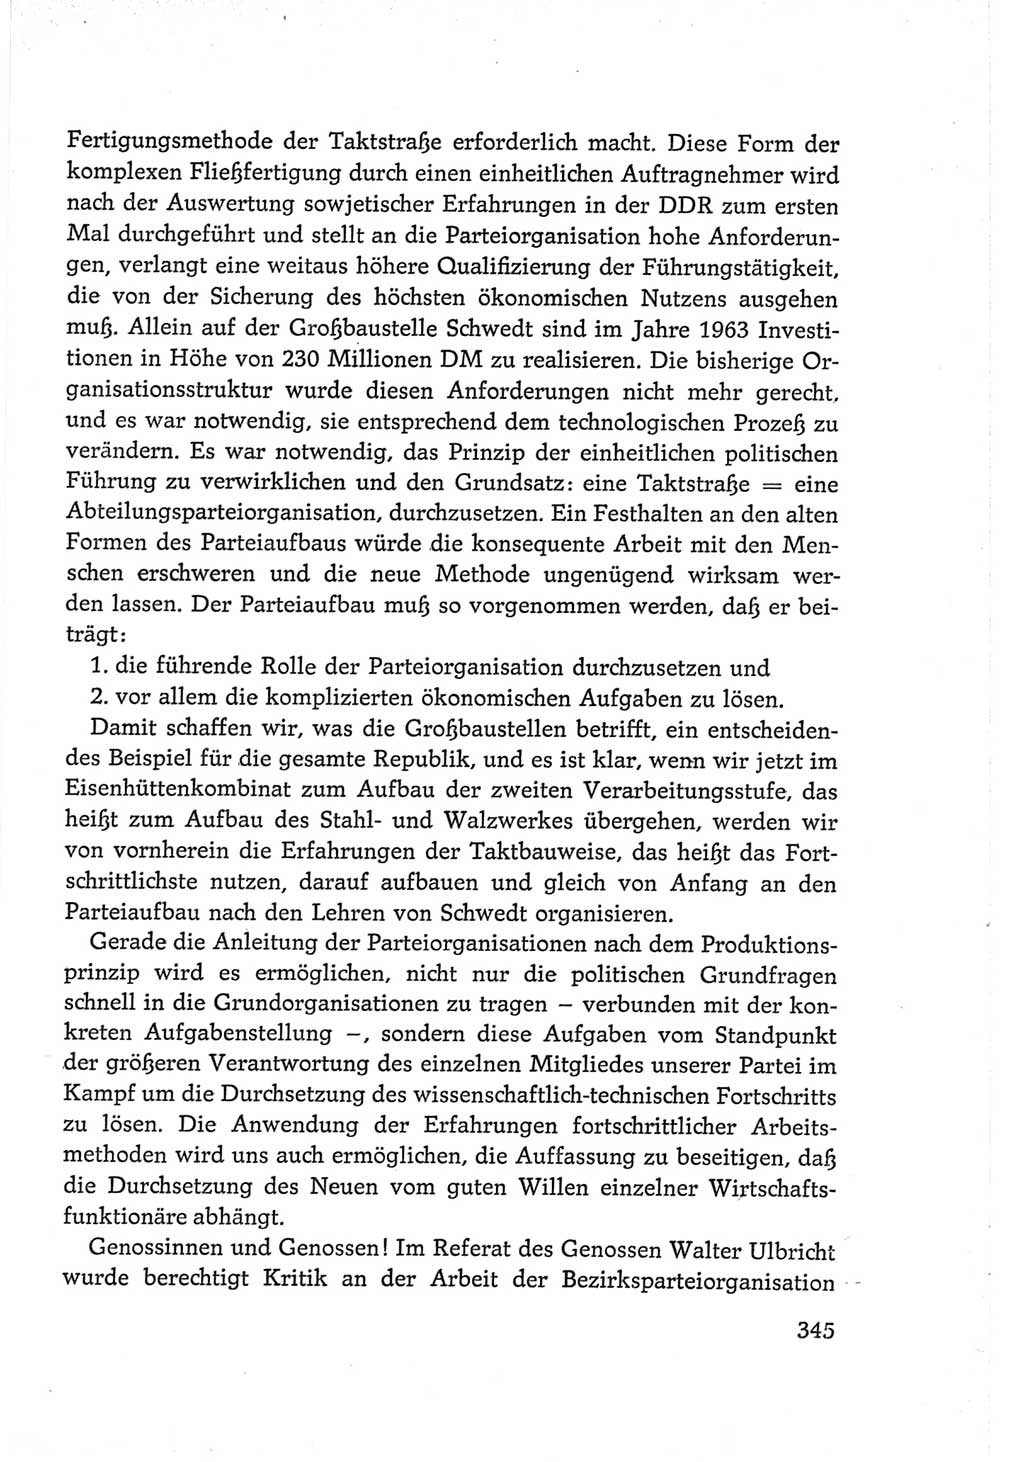 Protokoll der Verhandlungen des Ⅵ. Parteitages der Sozialistischen Einheitspartei Deutschlands (SED) [Deutsche Demokratische Republik (DDR)] 1963, Band Ⅲ, Seite 345 (Prot. Verh. Ⅵ. PT SED DDR 1963, Bd. Ⅲ, S. 345)